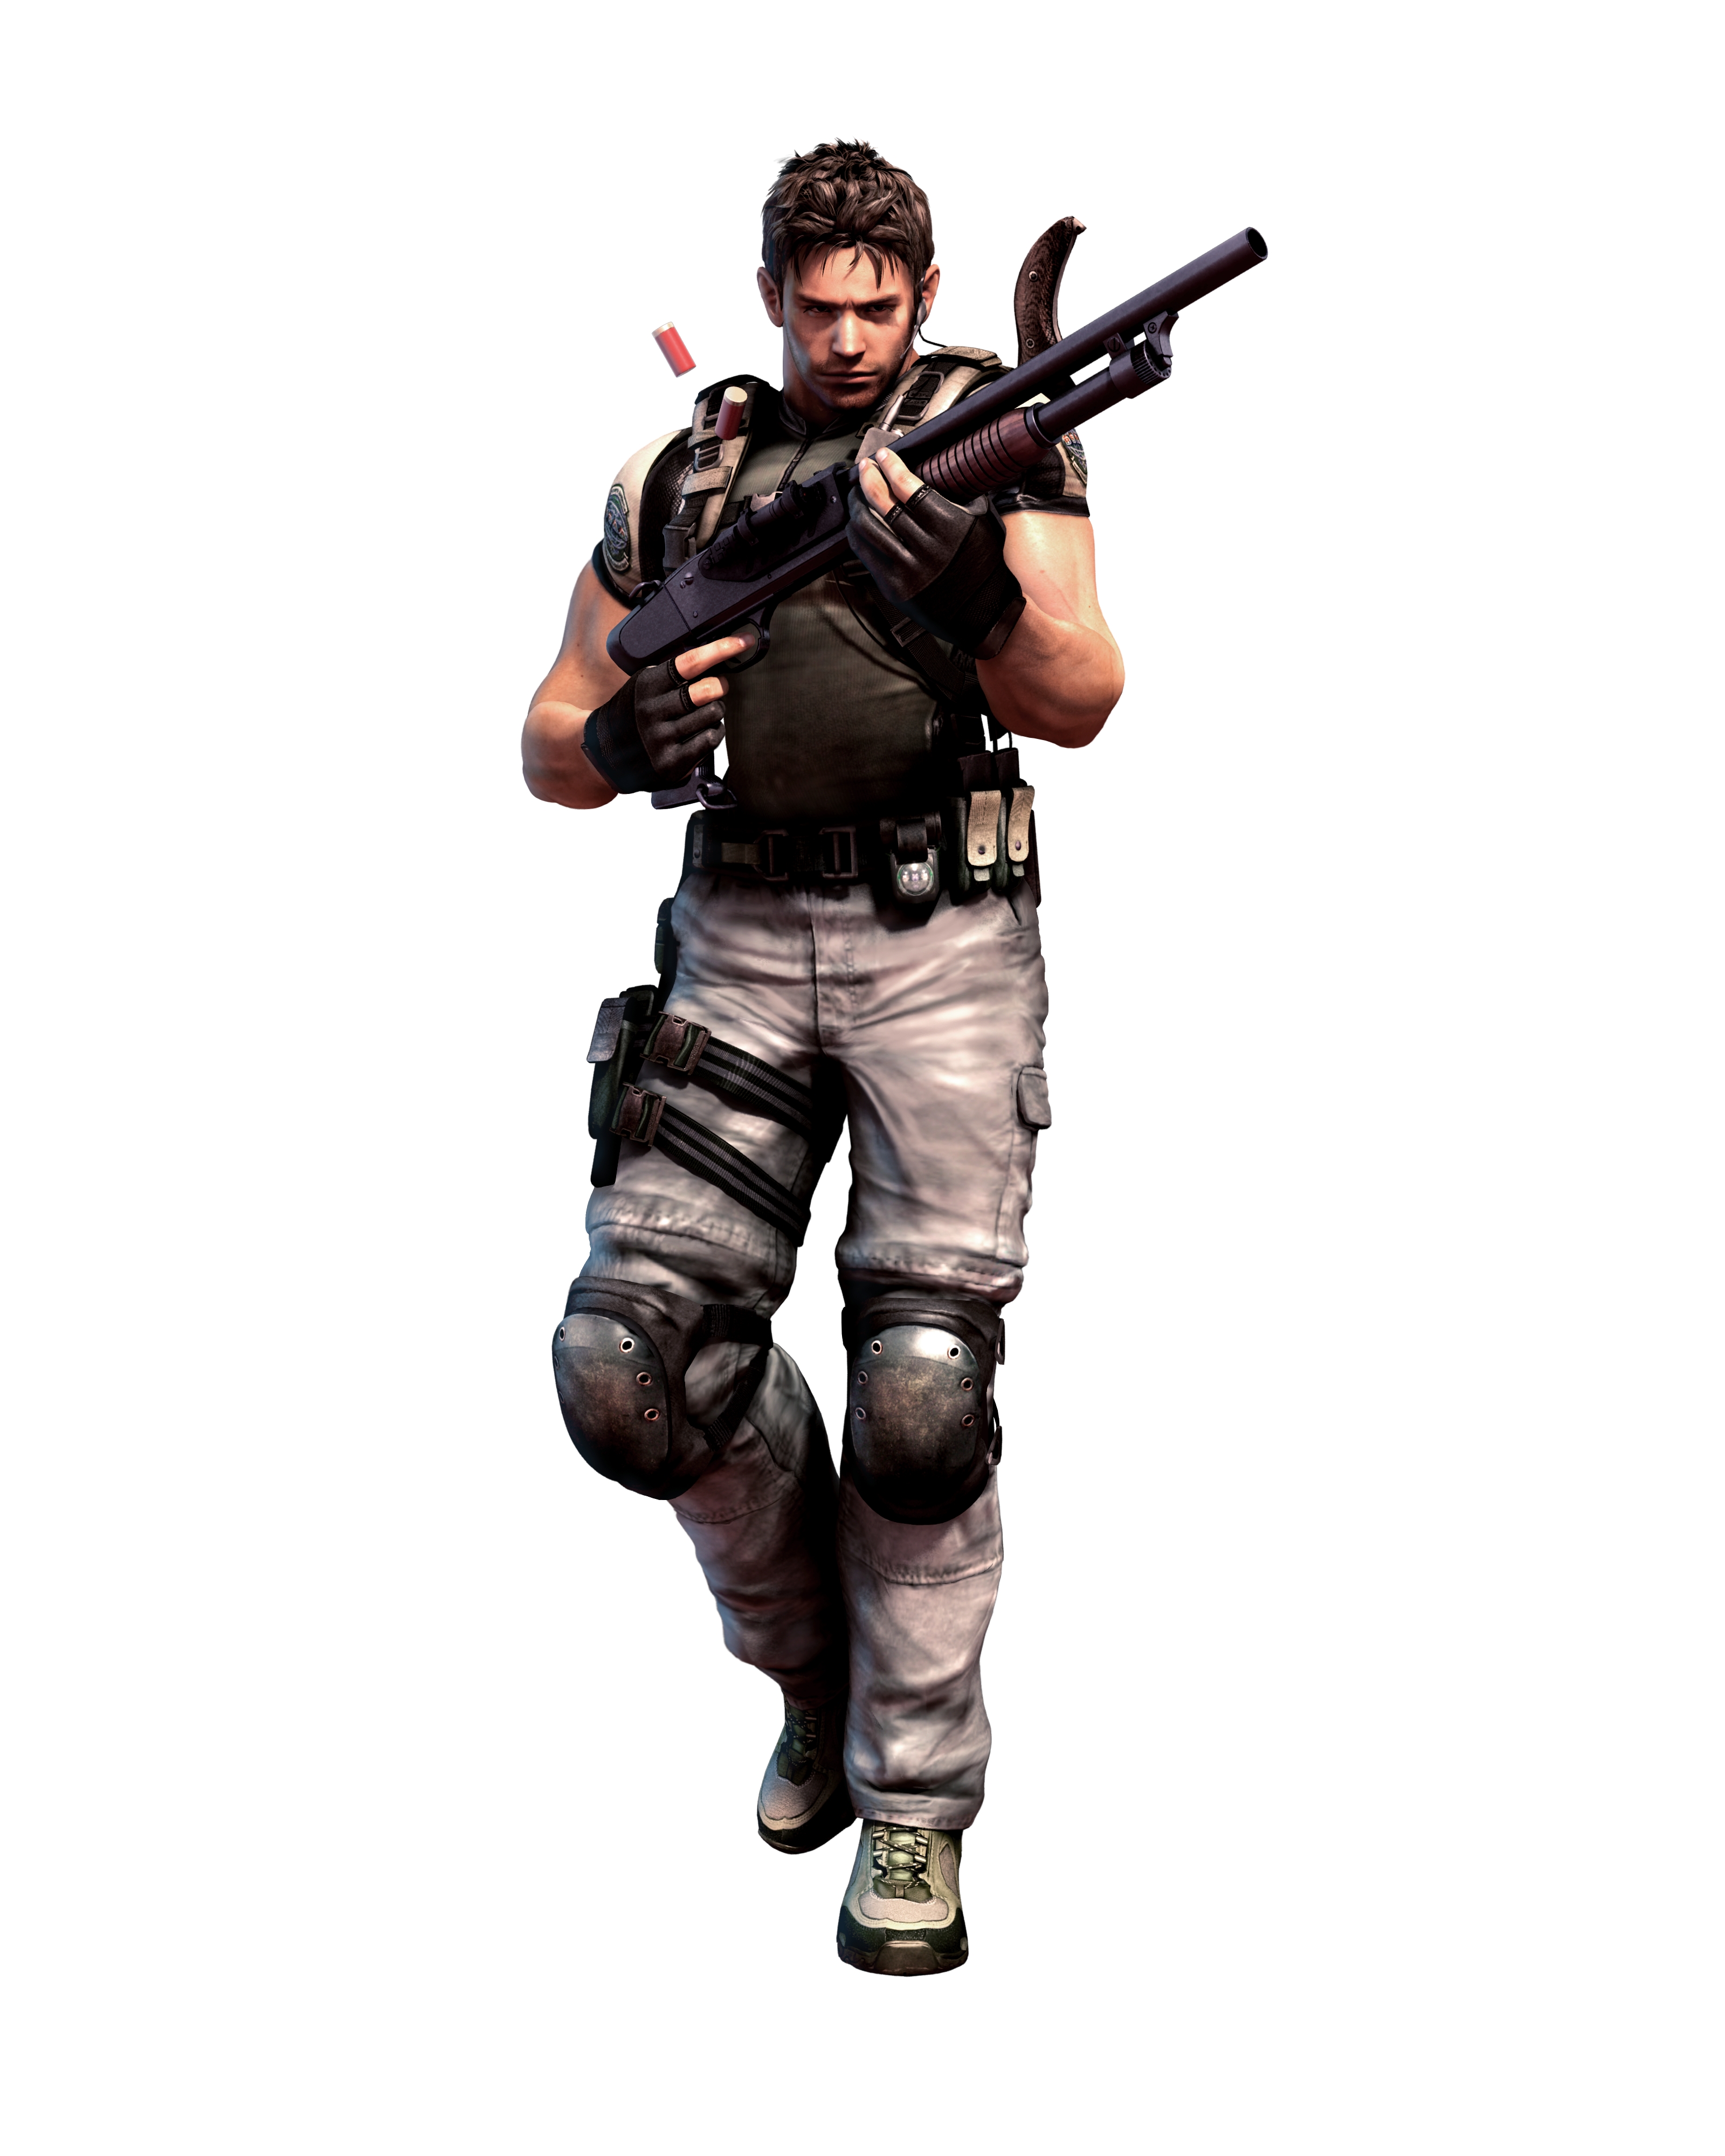 видеоигры, Resident Evil, наемники, Крис Редфилд - обои на рабочий стол